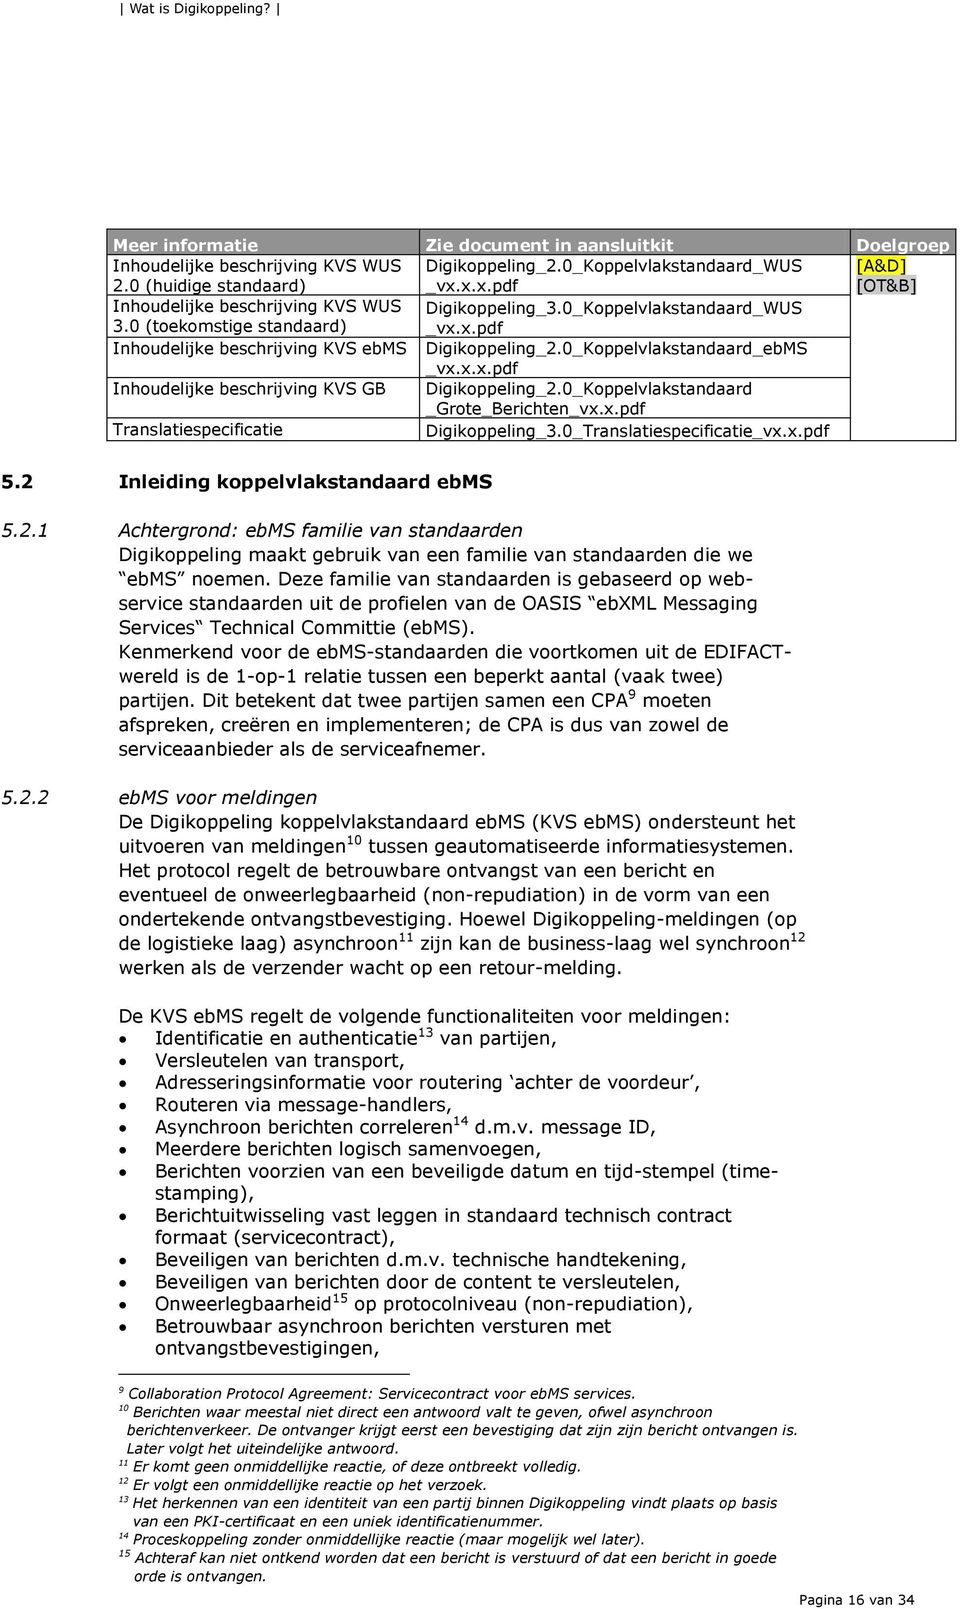 0_Koppelvlakstandaard_ebMS _vx.x.x.pdf Inhoudelijke beschrijving KVS GB Digikoppeling_2.0_Koppelvlakstandaard _Grote_Berichten_vx.x.pdf Translatiespecificatie Digikoppeling_3.